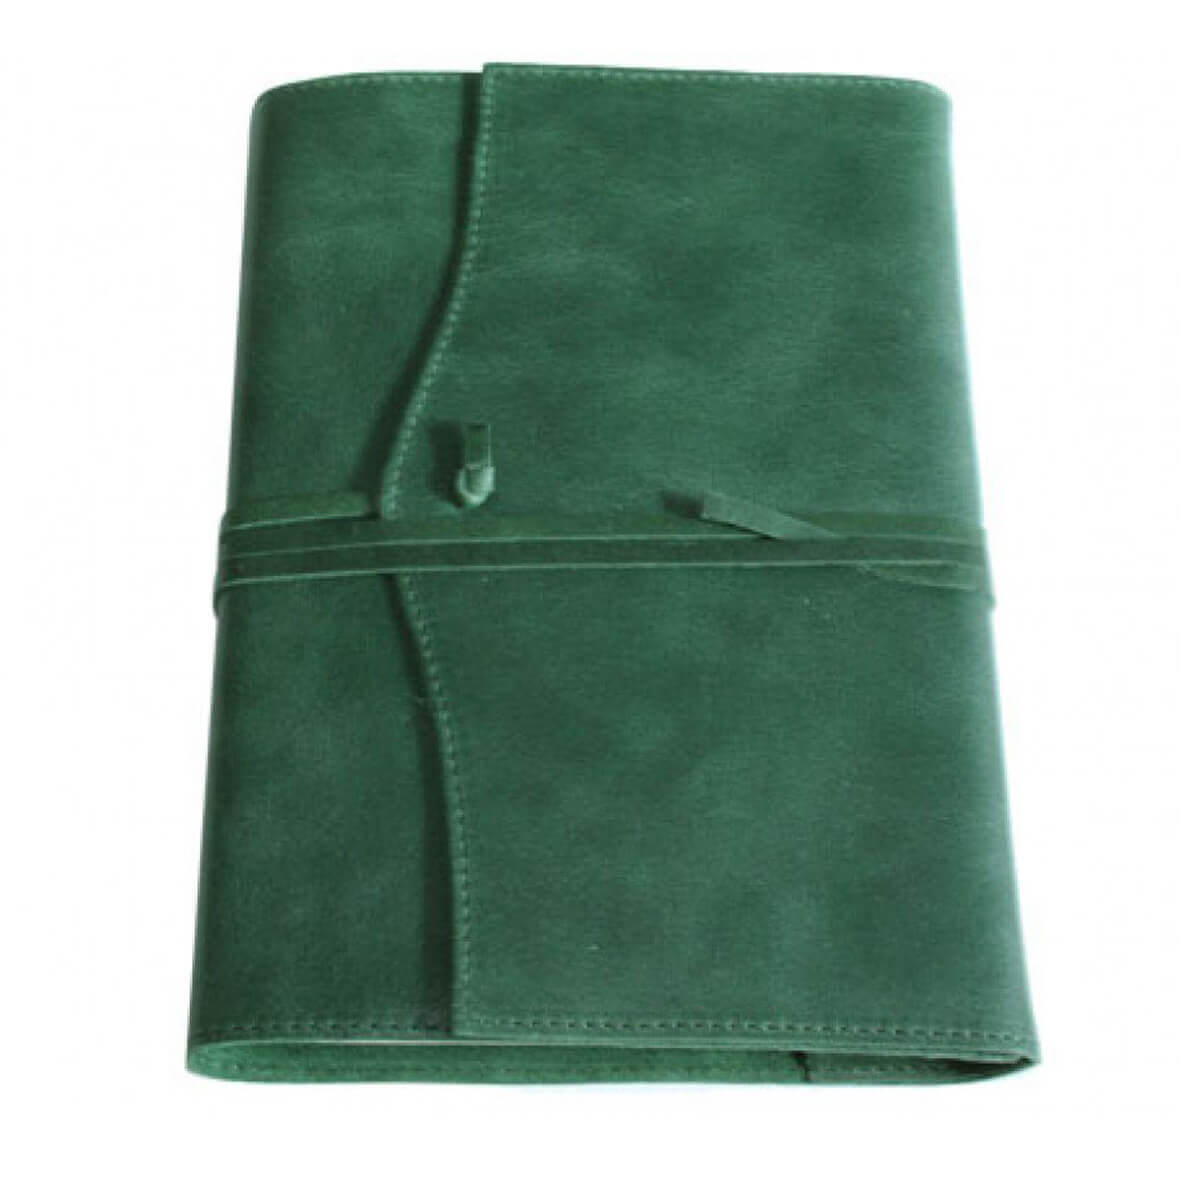 B.C. Dek de tafel staking Leren notitieboek navulbaar Amalfi groen kopen | My Lovely Notebook